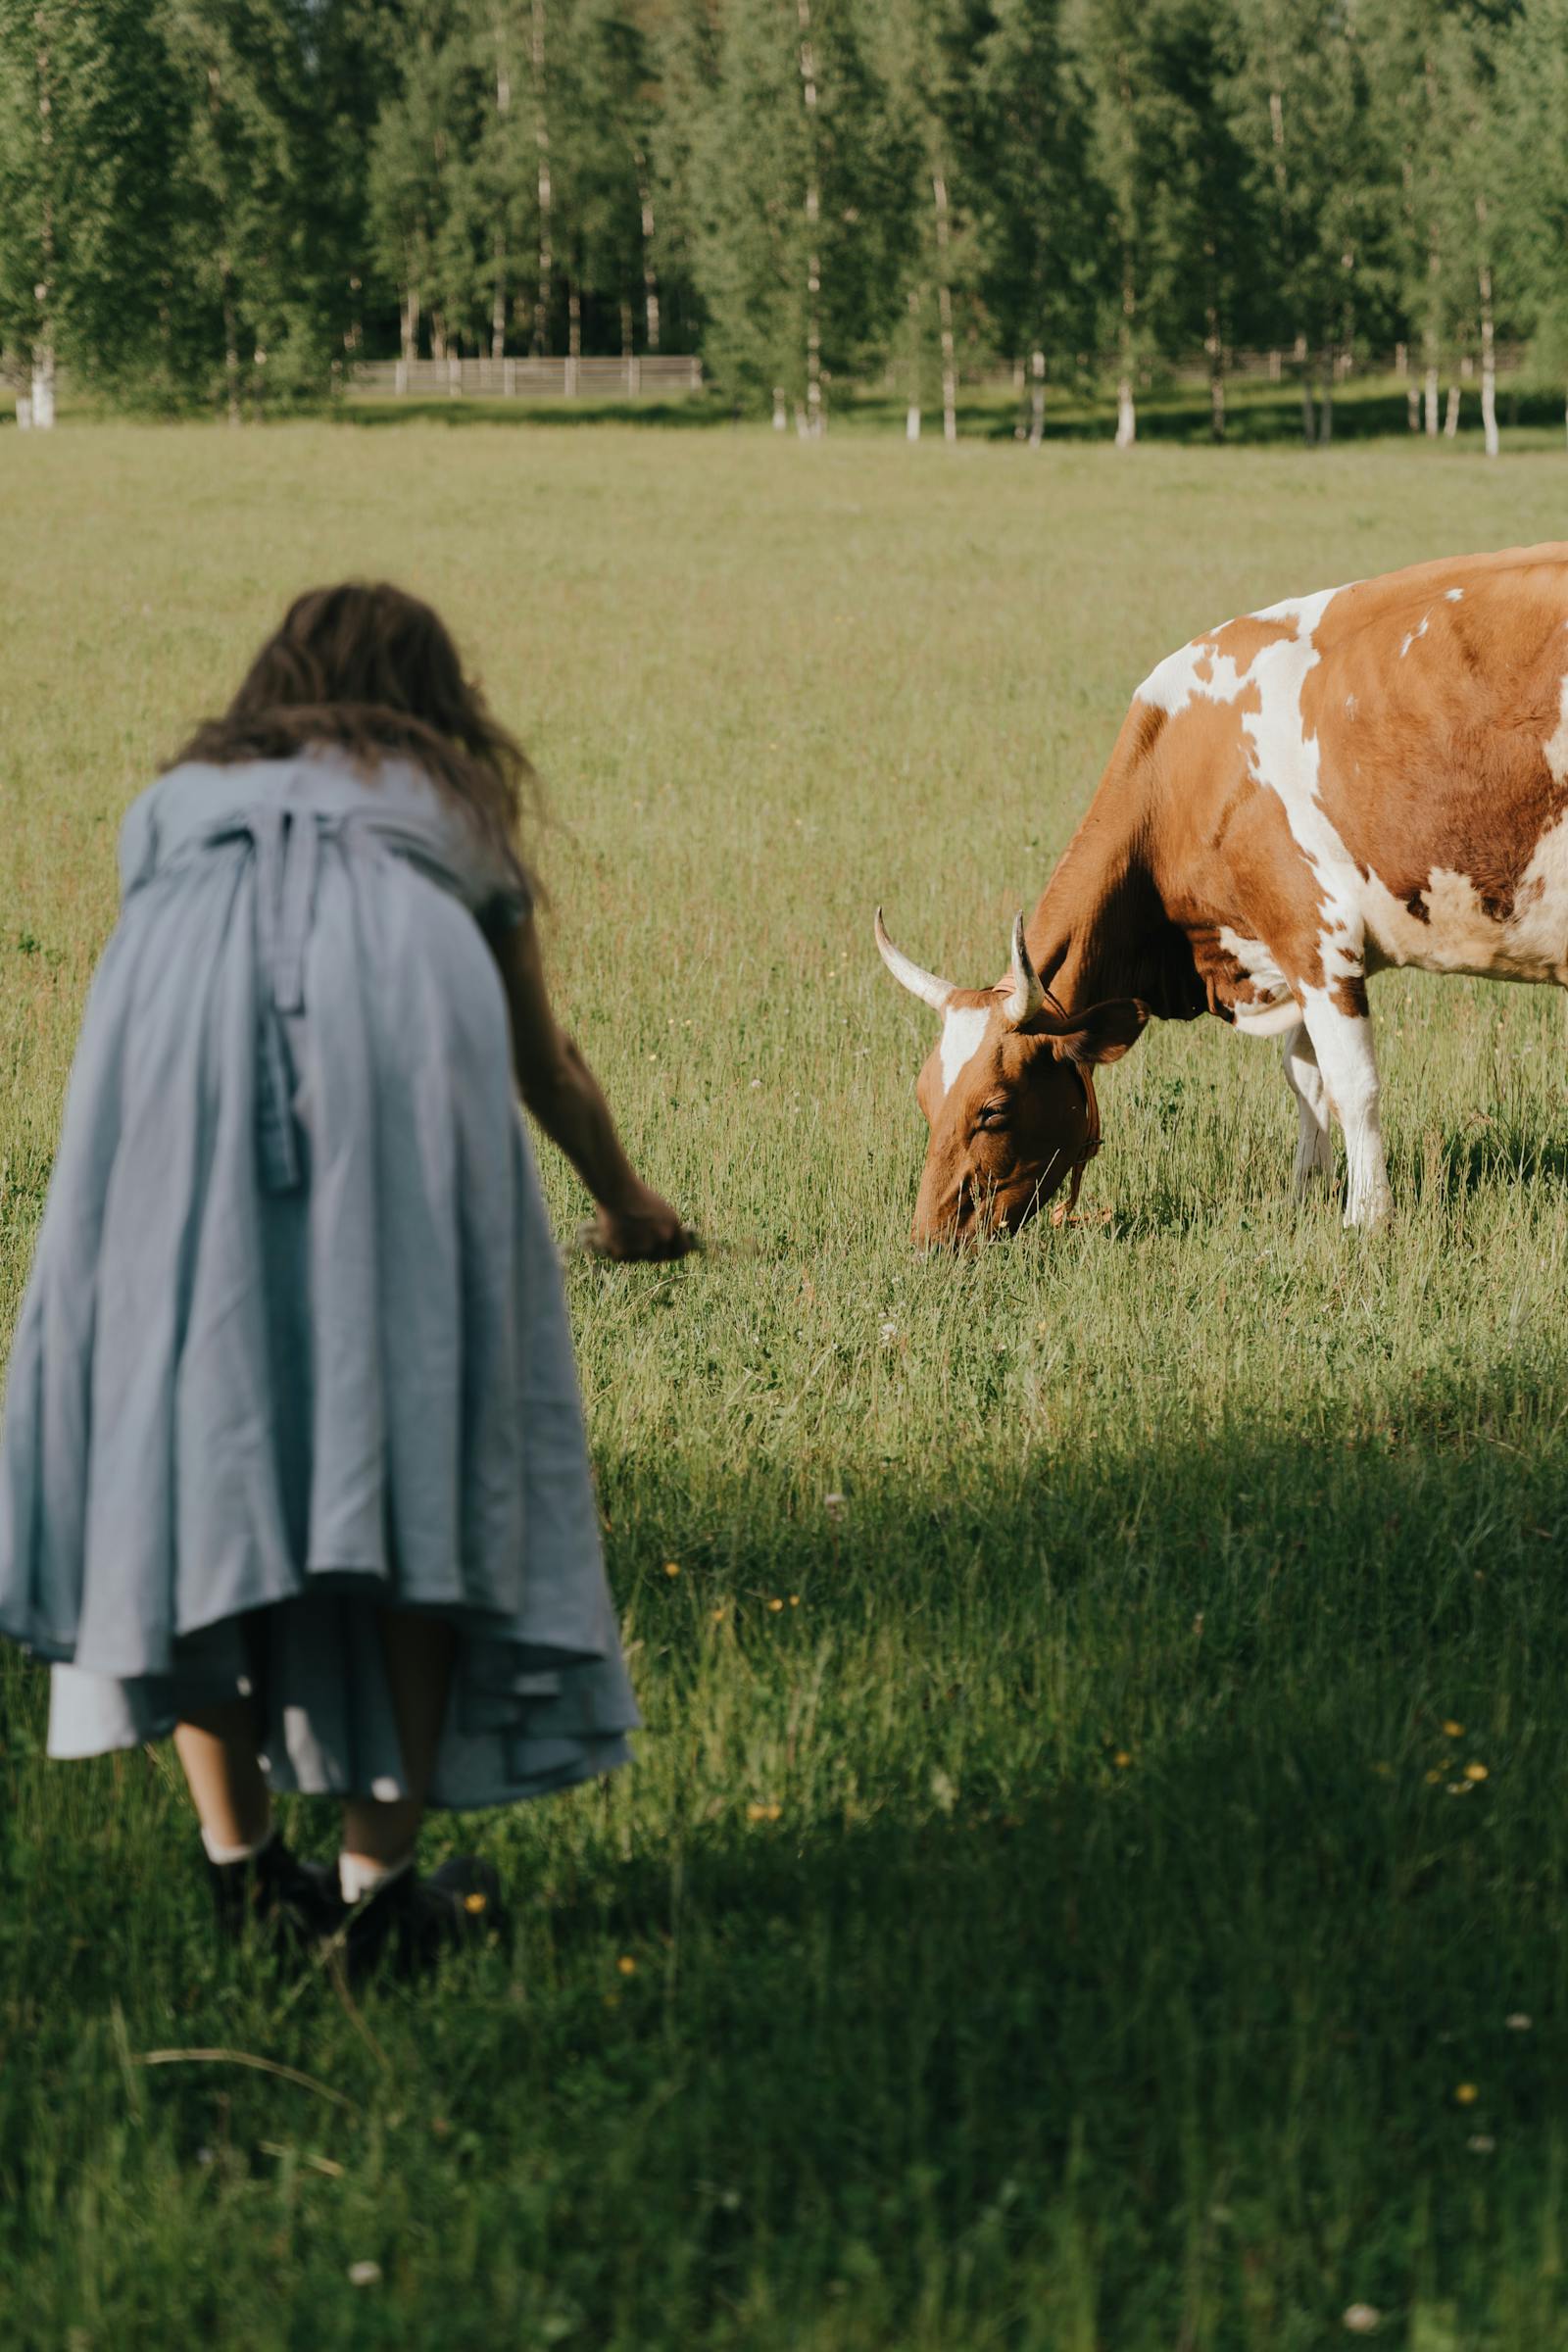 在农场摸驴的女子的手 库存照片. 图片 包括有 外面, 农场, 阳光, 女孩, 夏天, 家畜, 晴朗, 室外 - 219387616